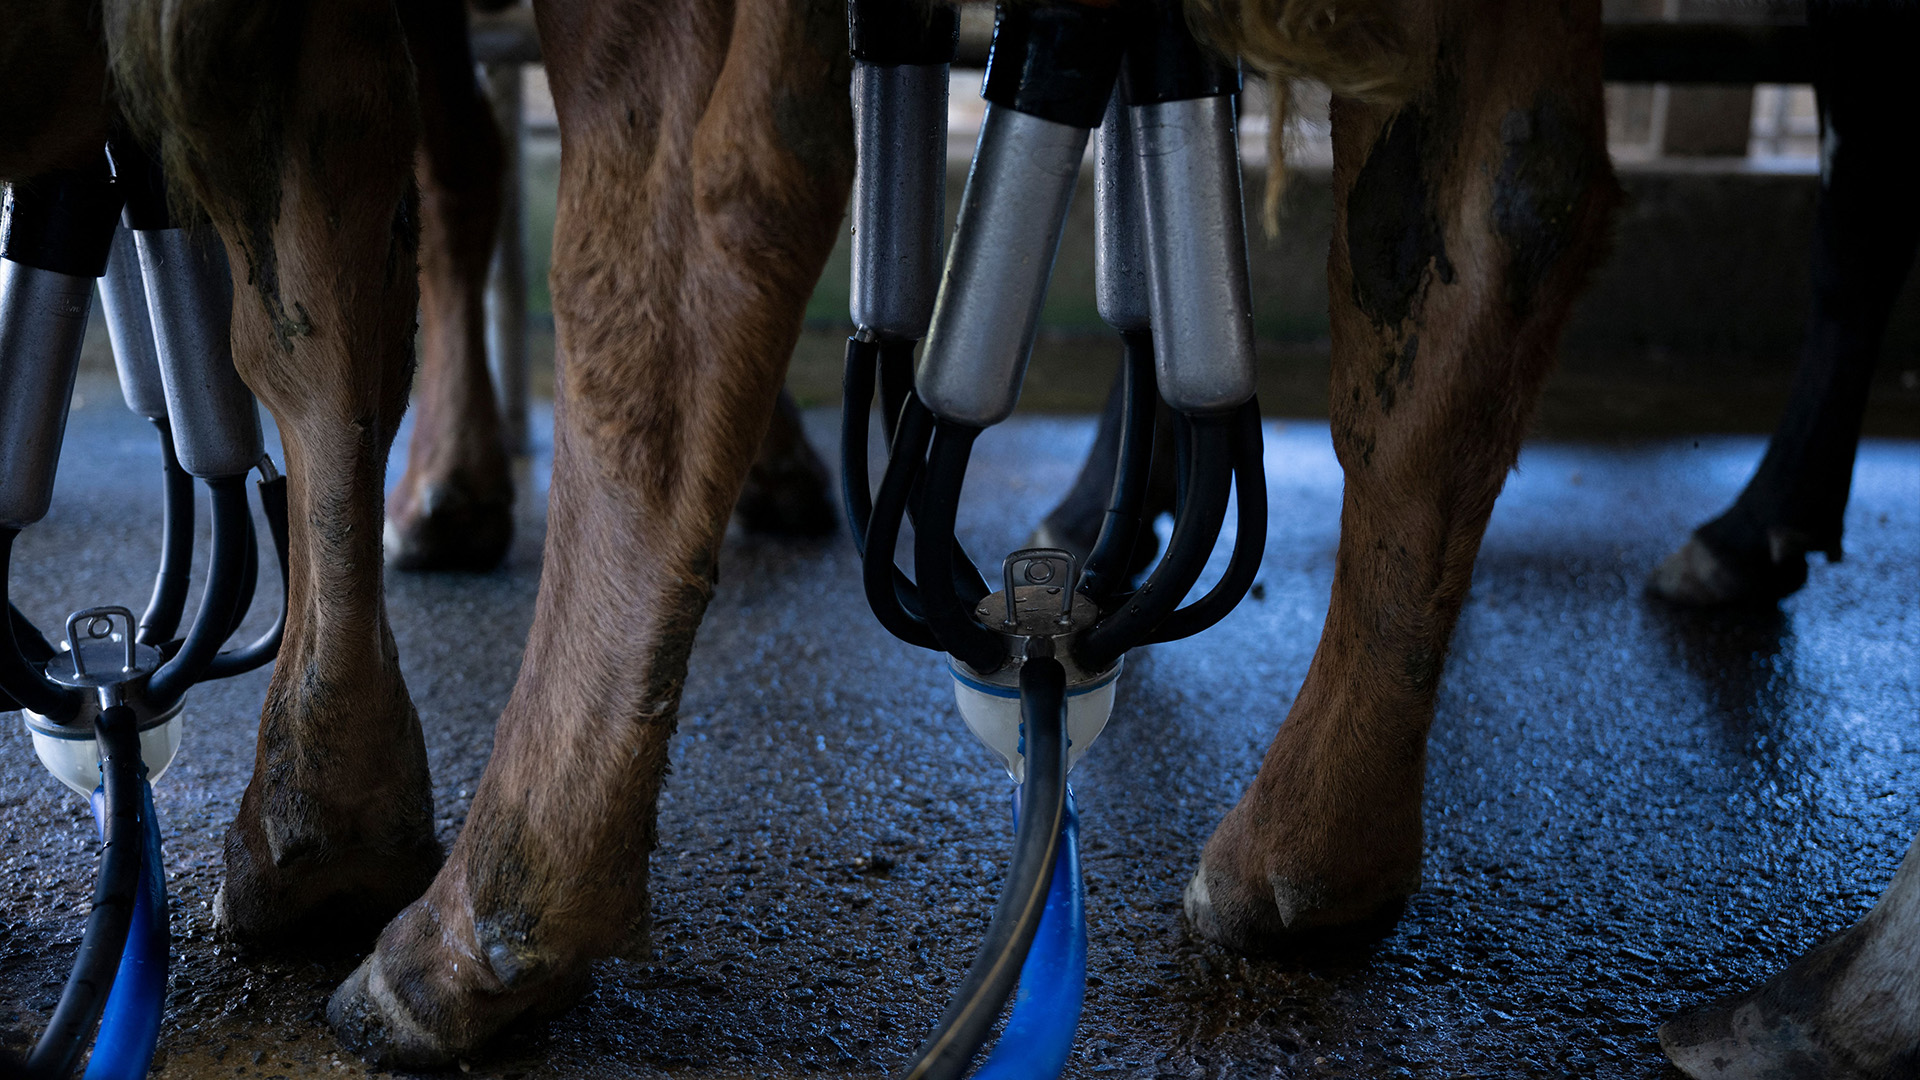 показано несколько дойных коров, подключенных к доильным аппаратам